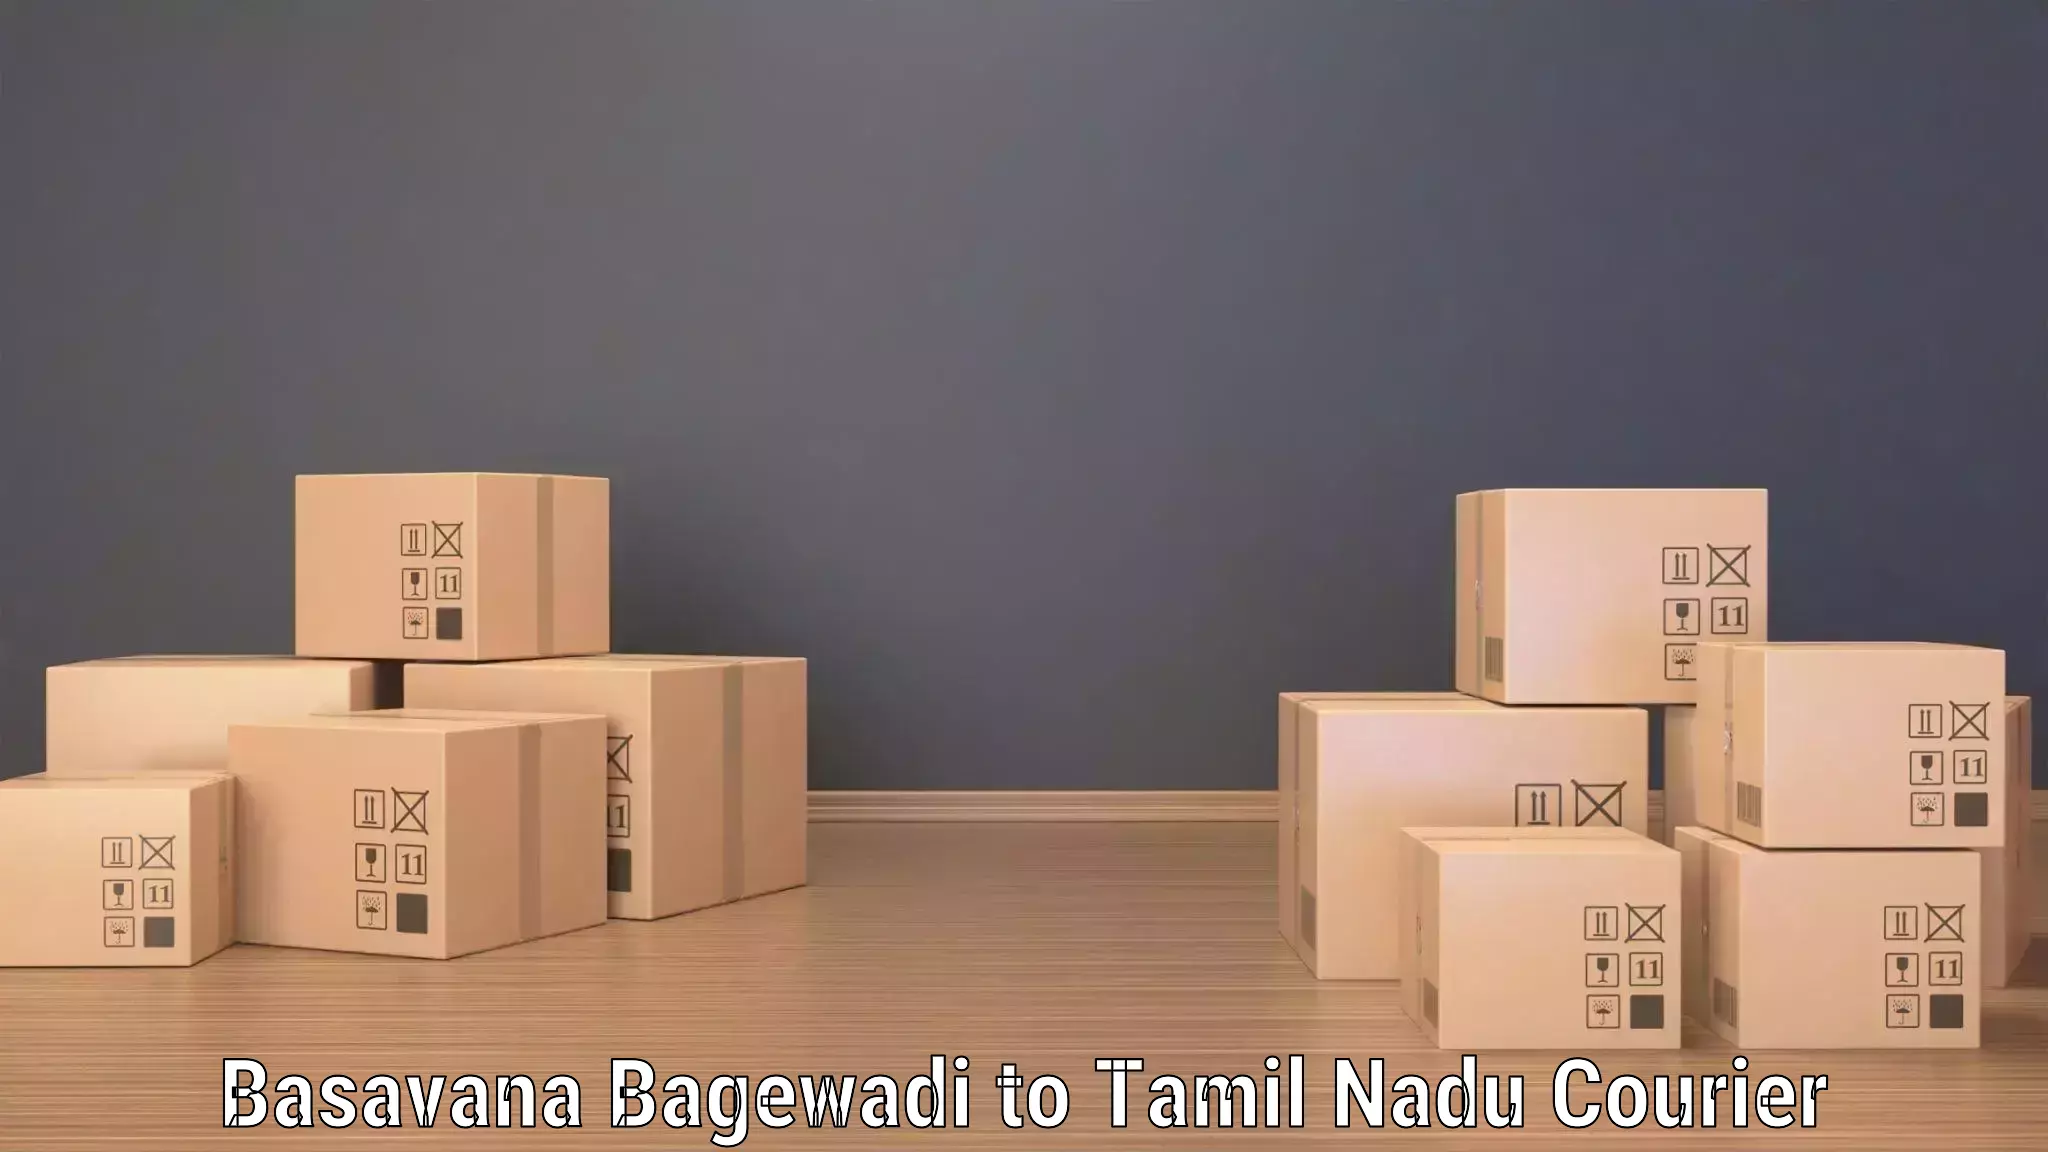 Automated parcel services Basavana Bagewadi to Tiruchi